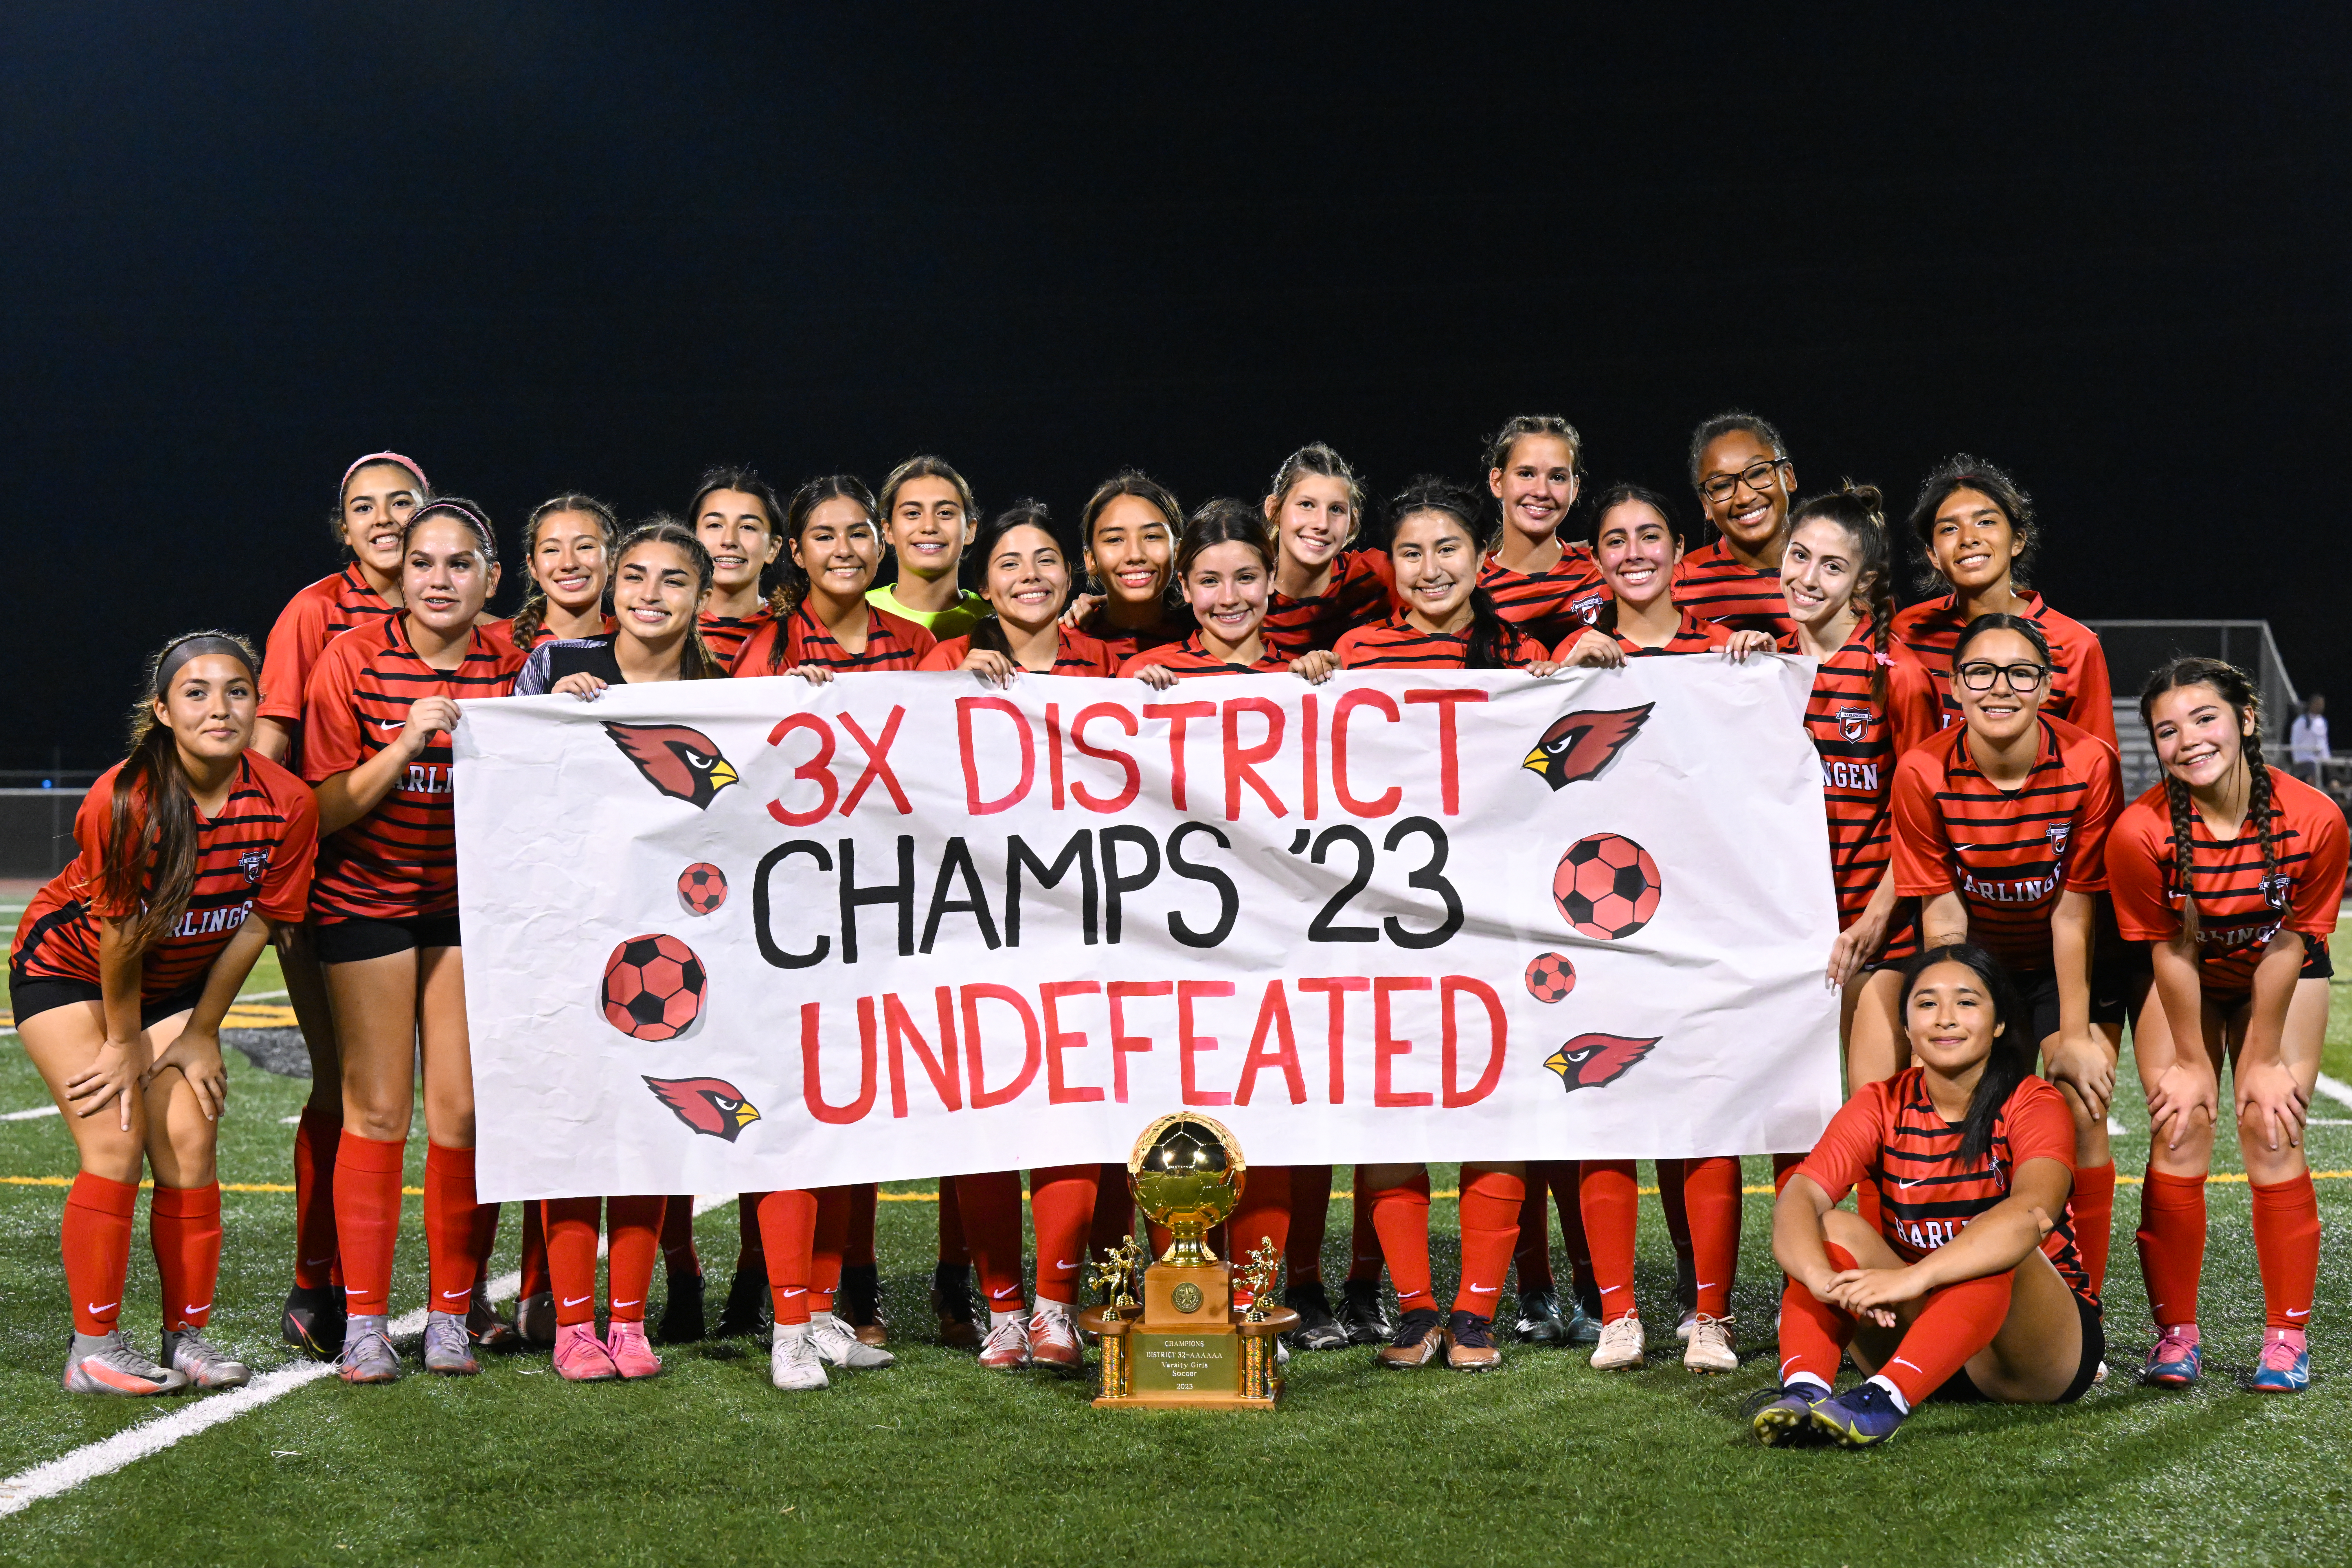 El equipo de soccer Lady Cardinal fue nombrado Campeón Nivel Distrito.